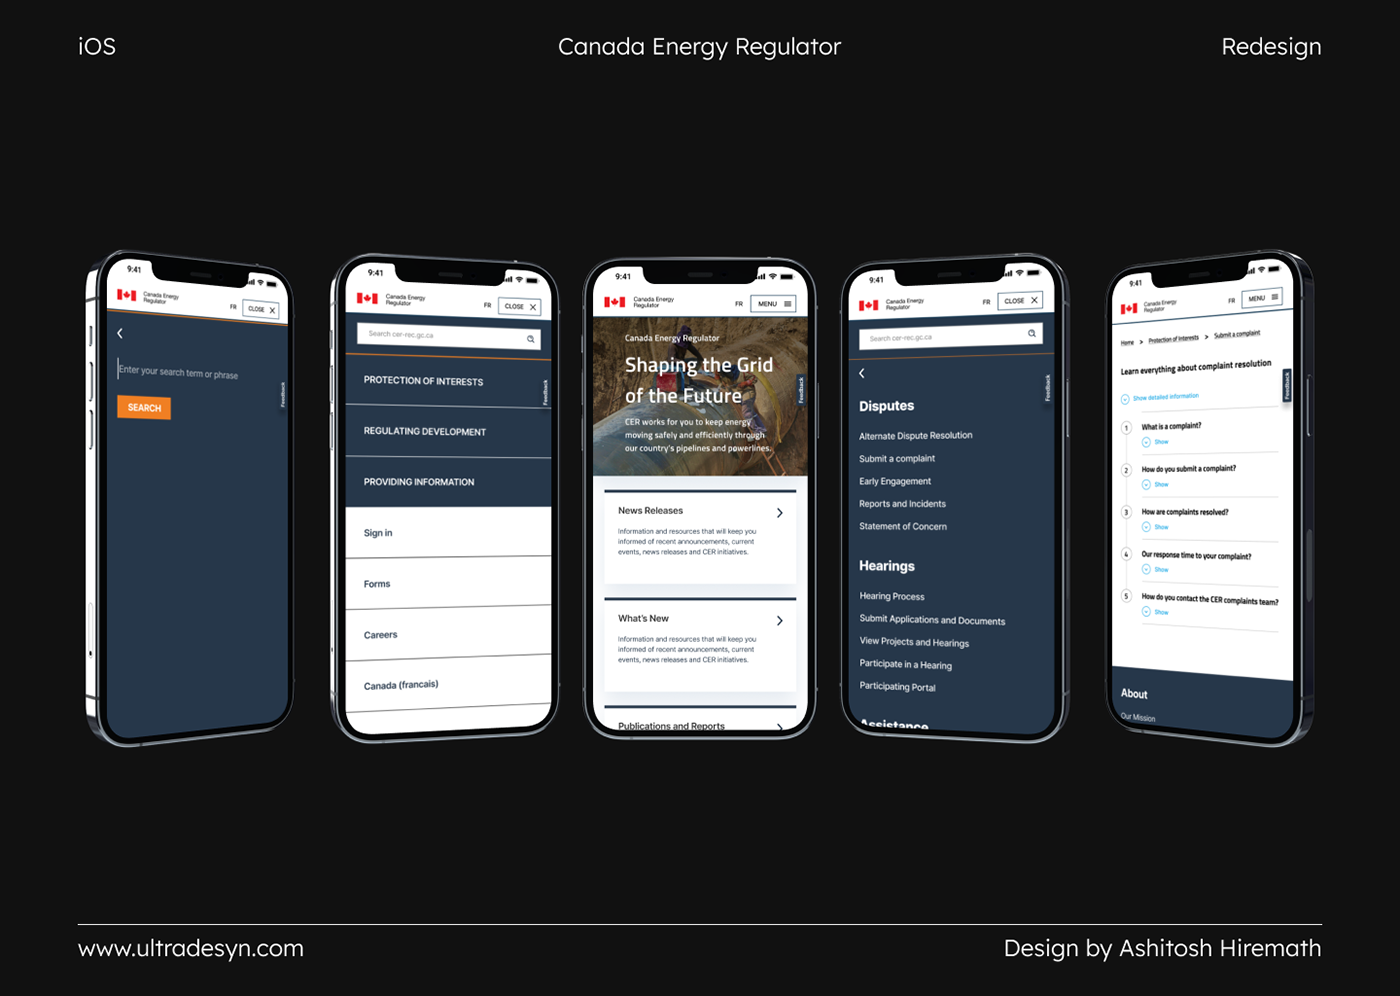 Mobile UI ios Canada redesign ux uiuxdesign canadaenergyregulator Cer iosdesign